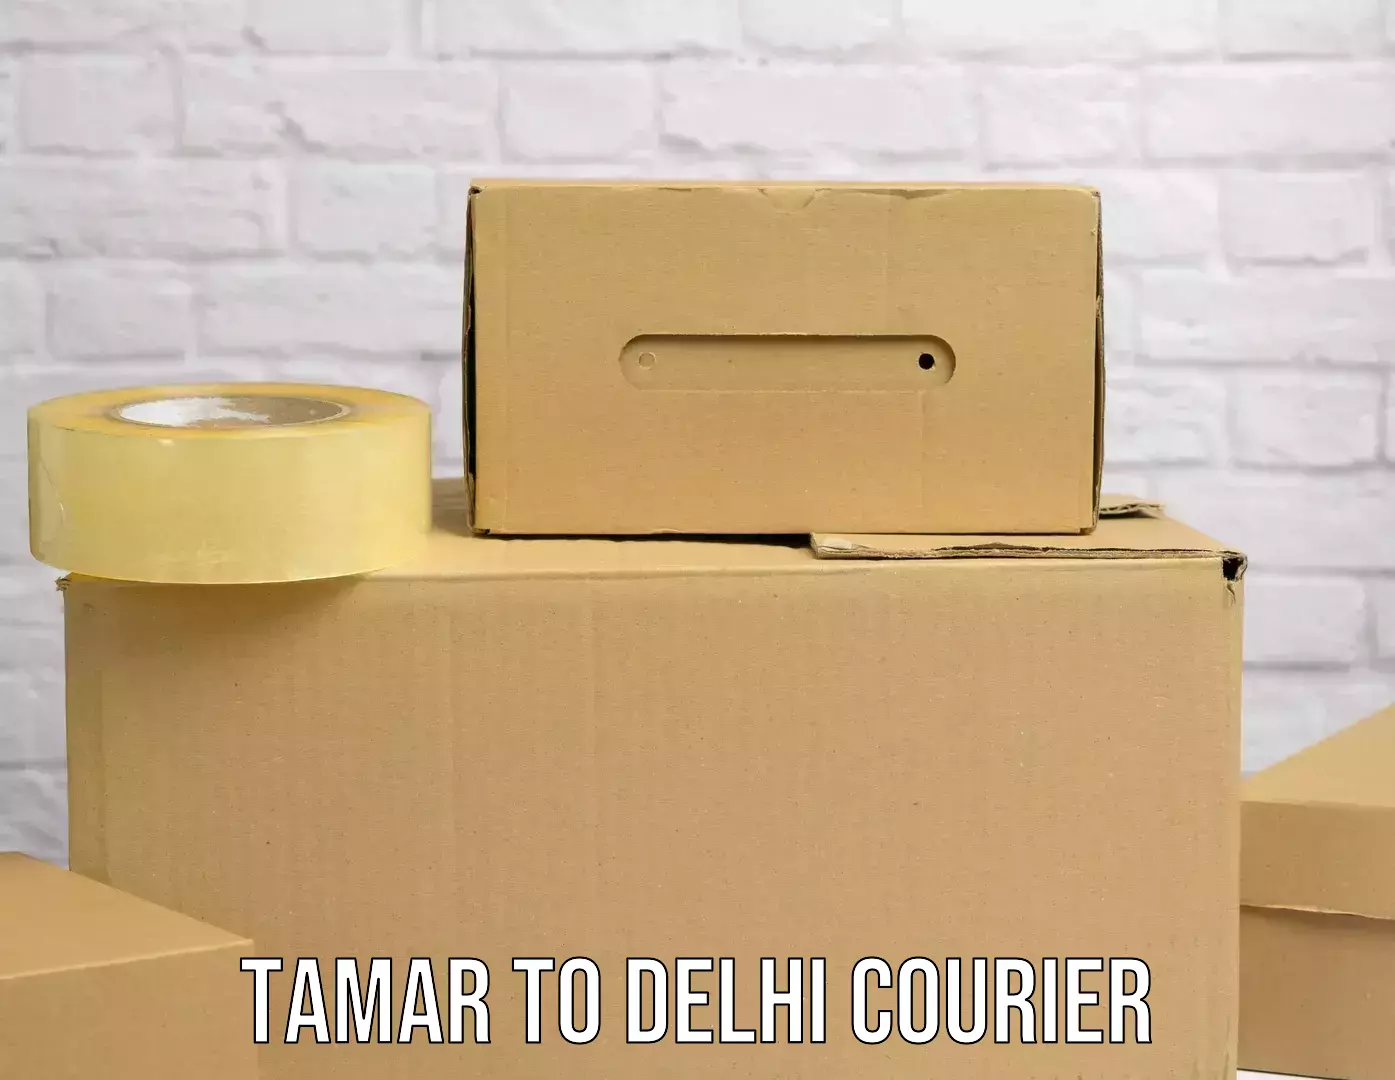 Express postal services Tamar to East Delhi